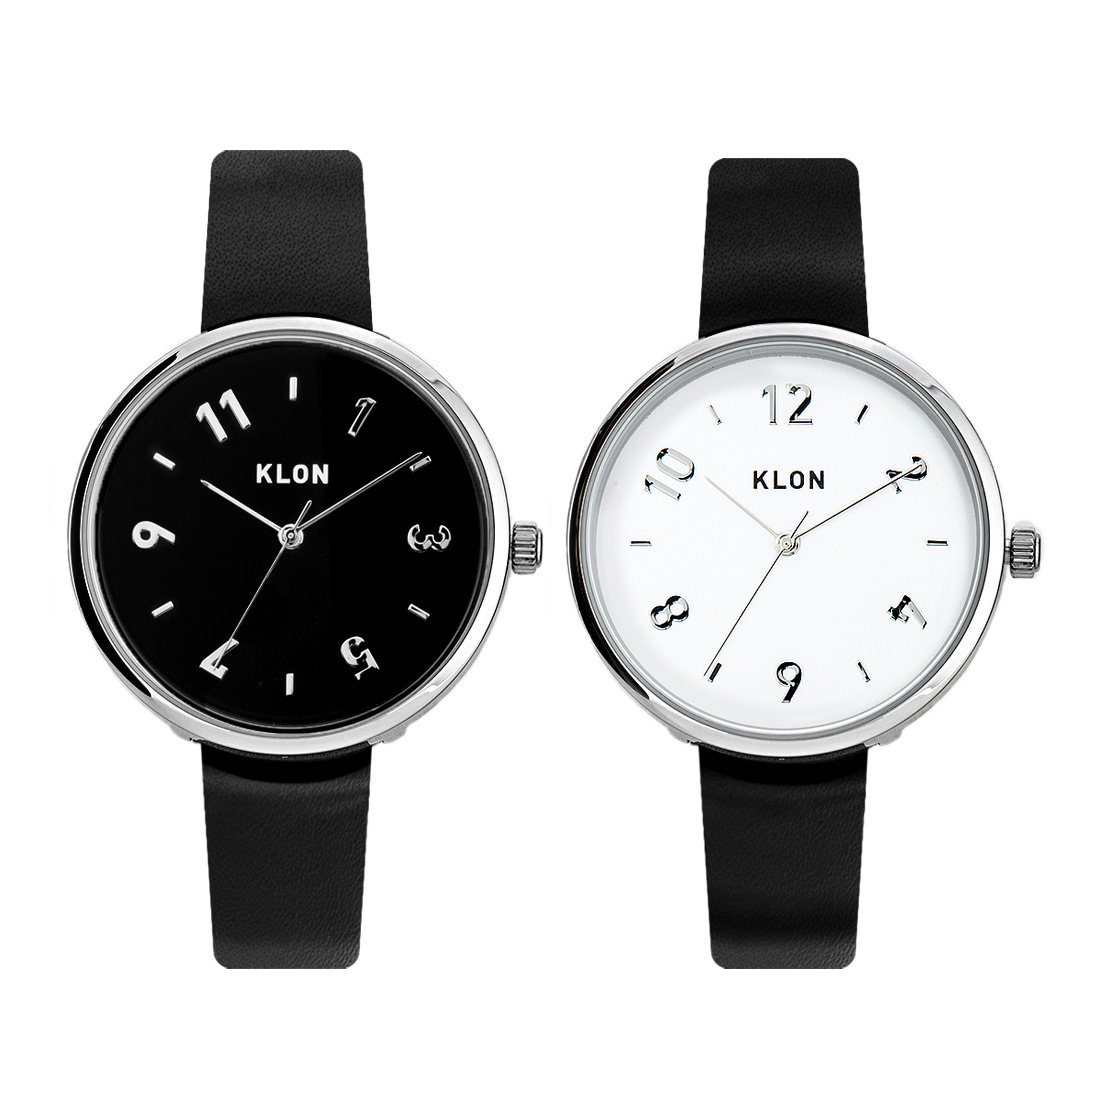 【組合せ商品】KLON PASS TIME DARING(EVEN 33mm×ODD【BLACK SURFACE】33mm) カジュアル 腕時計